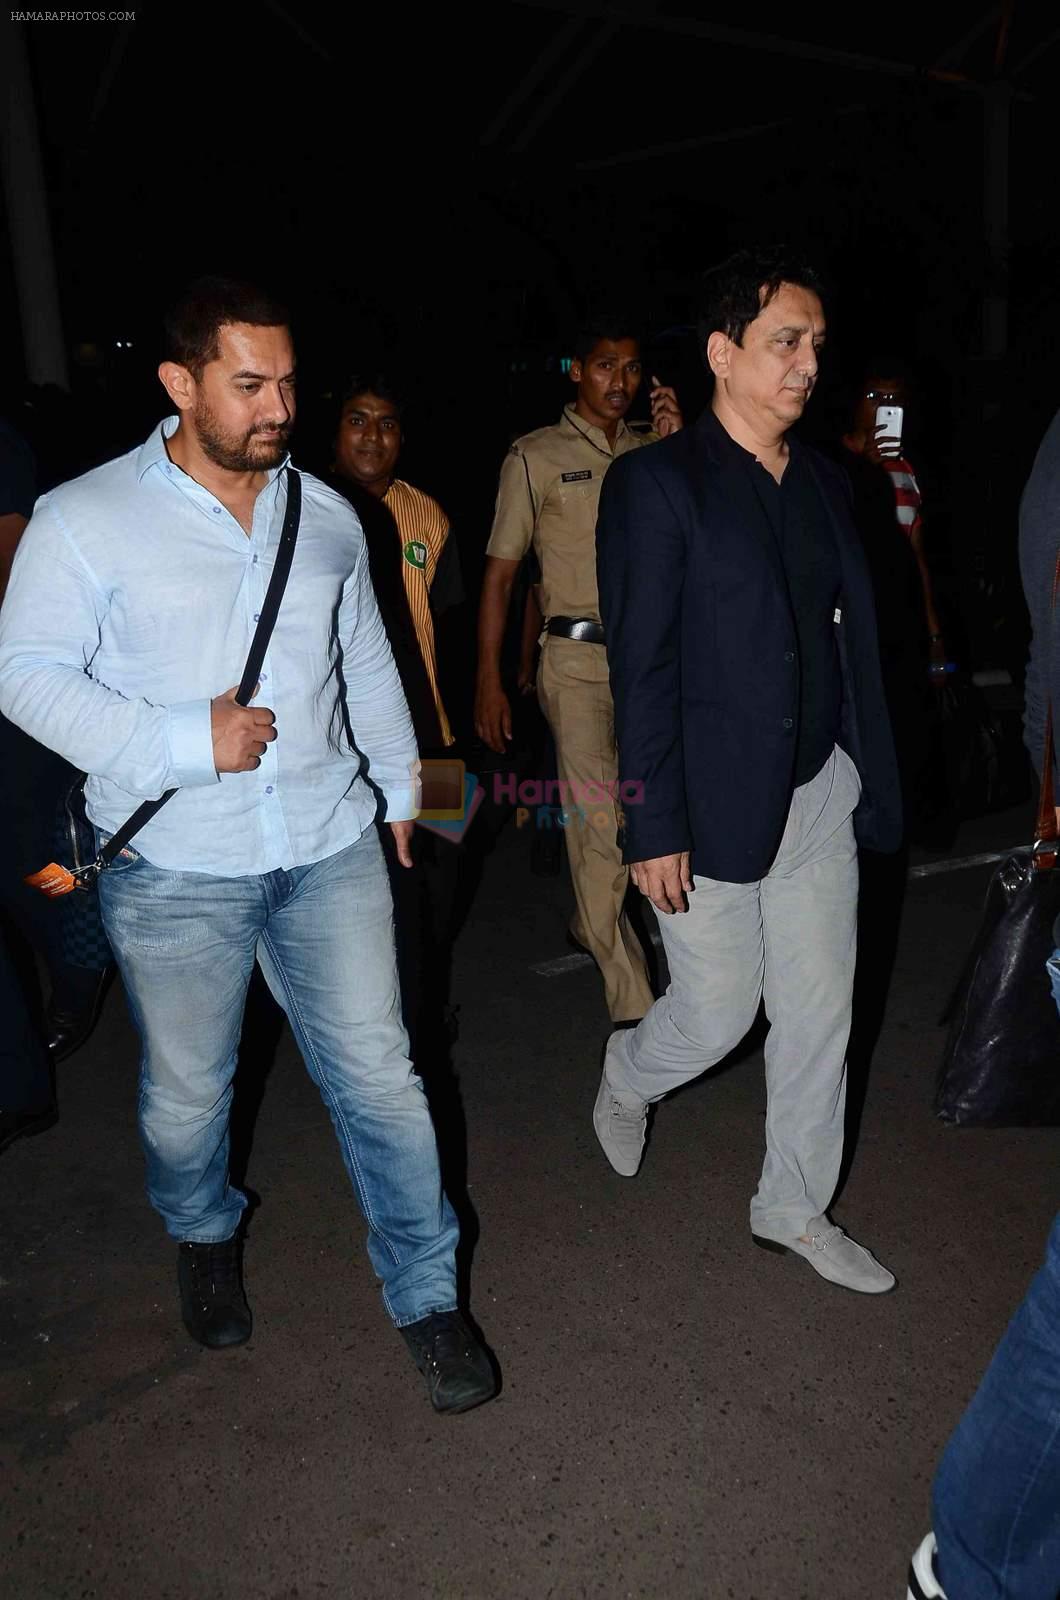 Aamir Khan, Sajid Nadiadwala snapped at airport  on 30th April 2015